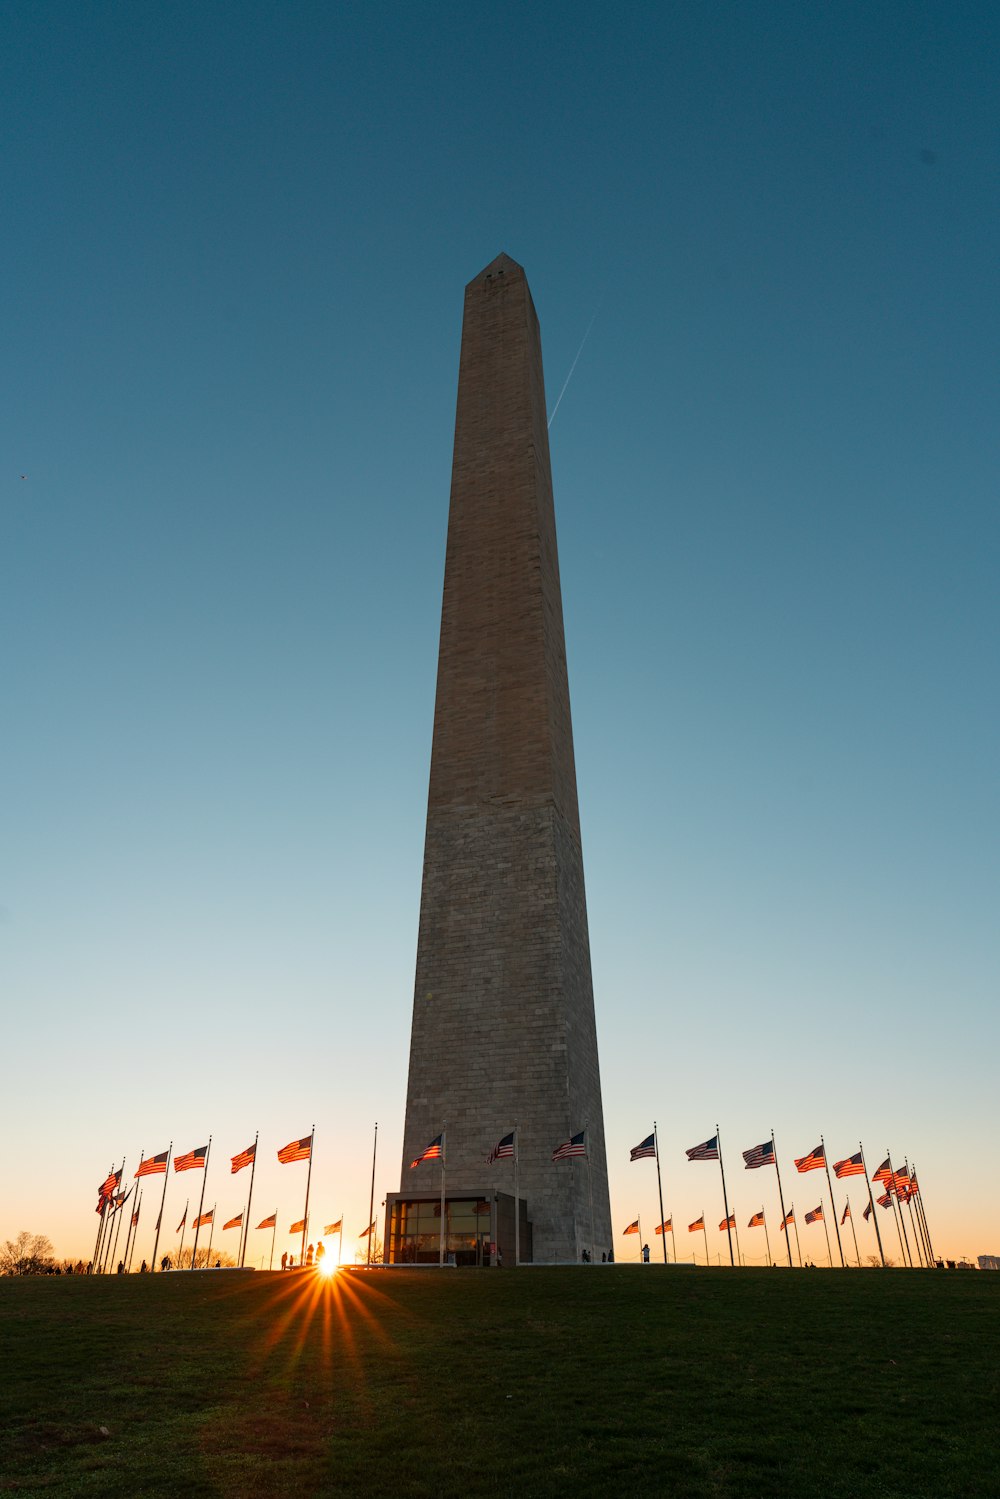 워싱턴 기념비를 배경으로 주변에 깃발이 있는 키가 큰 기념물